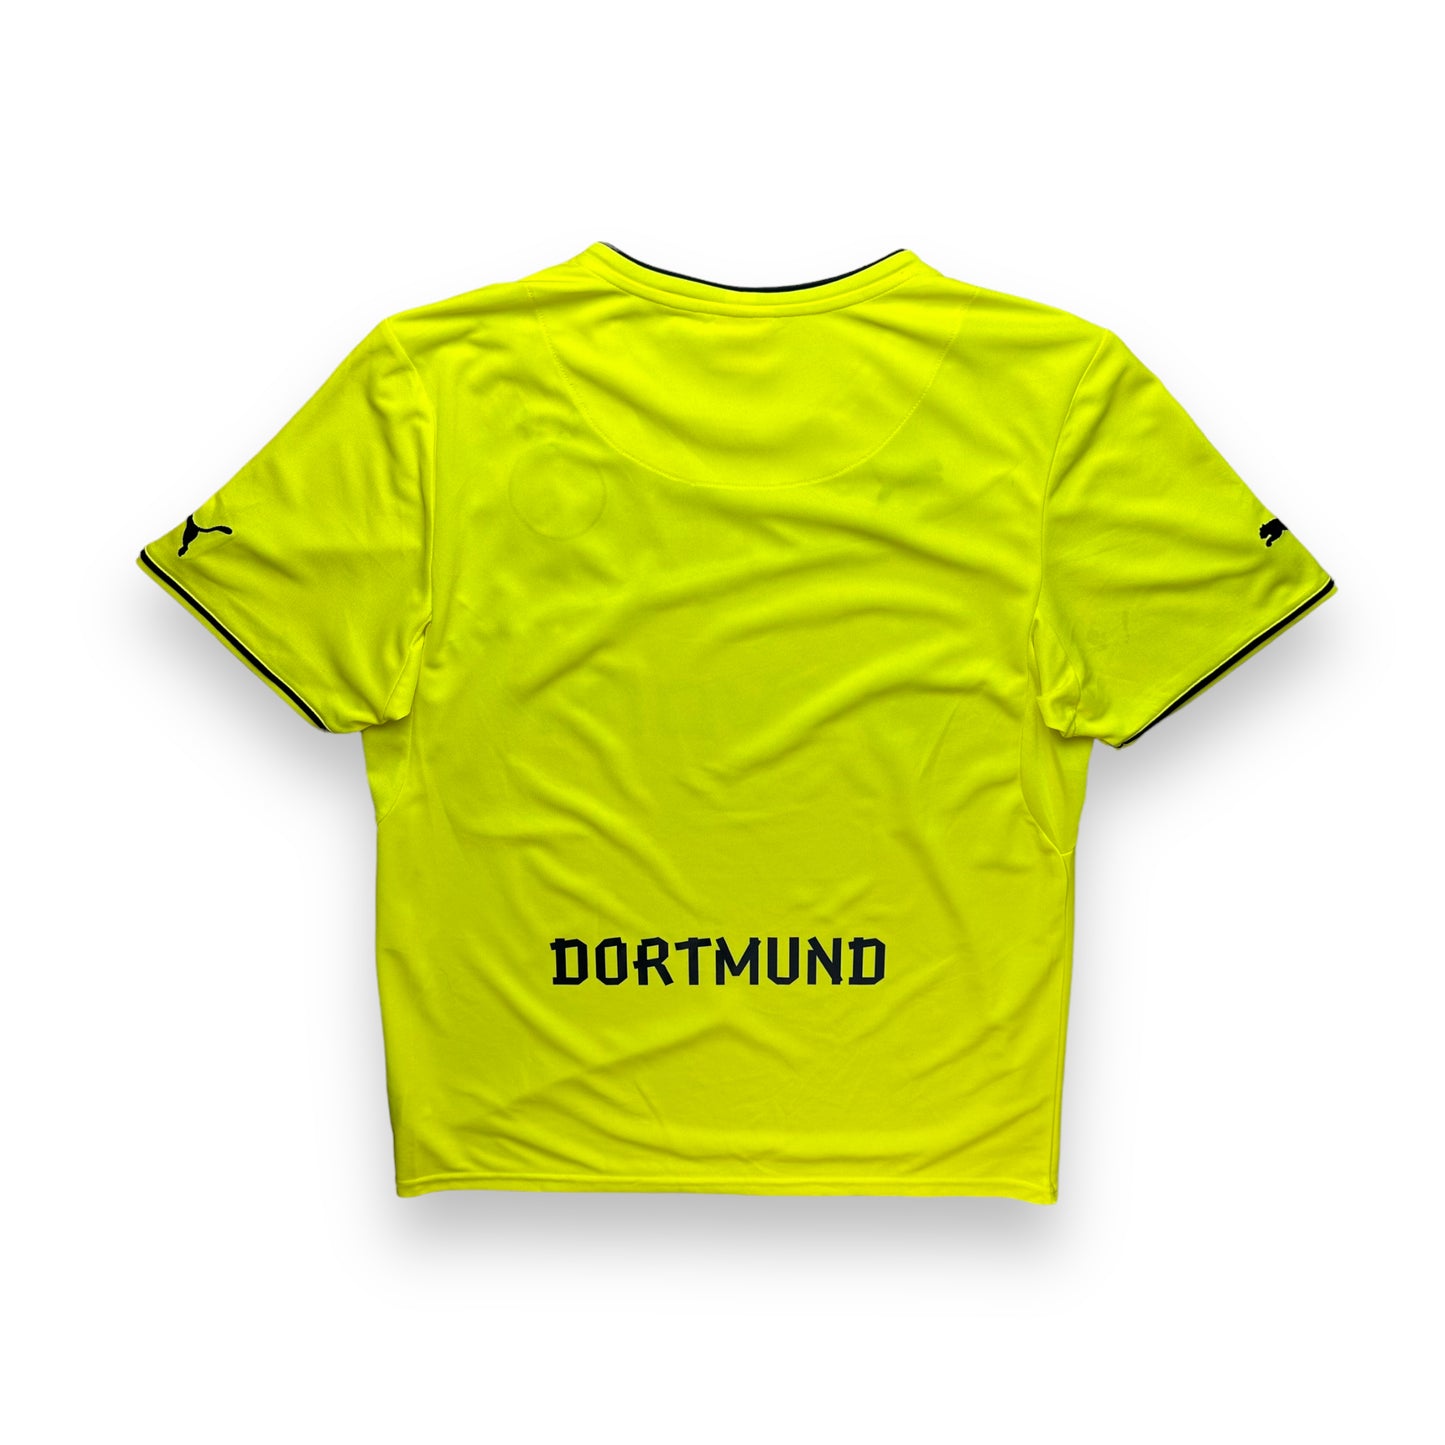 Borussia Dortmund 2013-14 Home Shirt (XL)